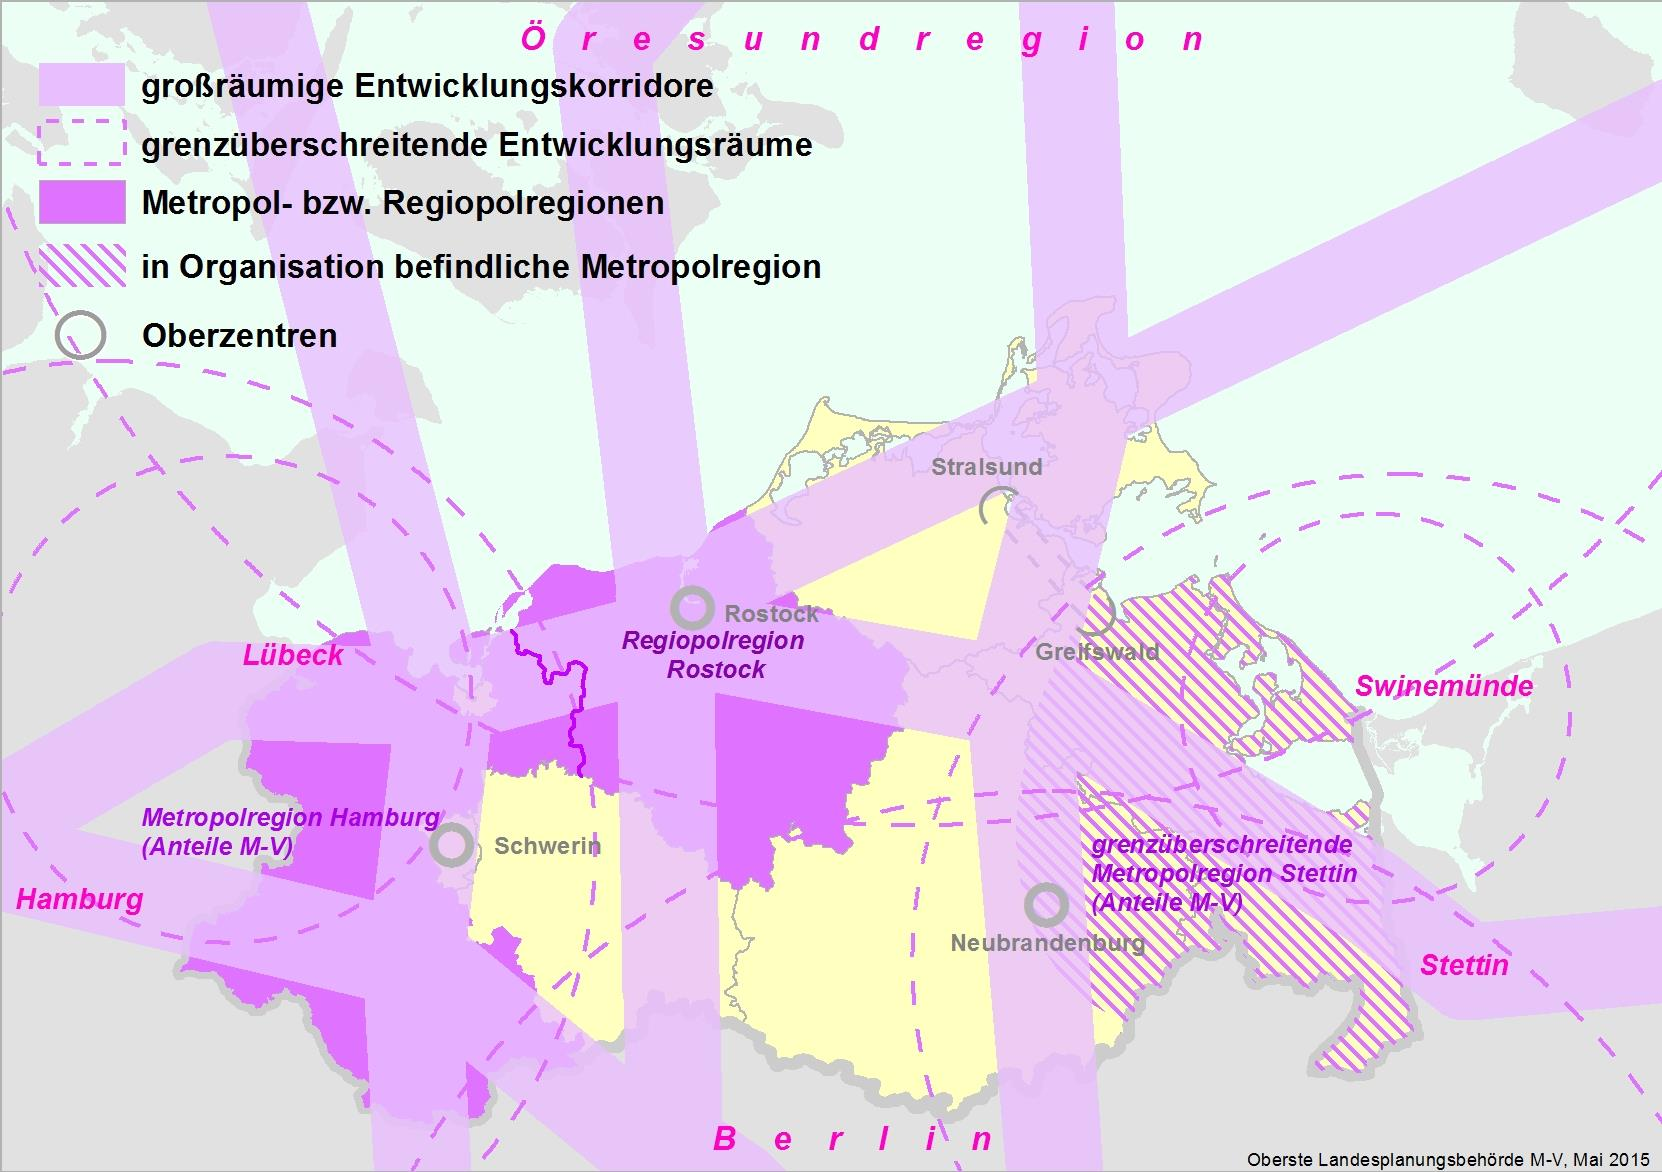 Begründung: Die Lage Mecklenburg-Vorpommerns im südlichen Ostseeraum als Bindeglied von Nord- und Mitteleuropa ist ein wichtiger Standortvorteil im Wettbewerb der Regionen.